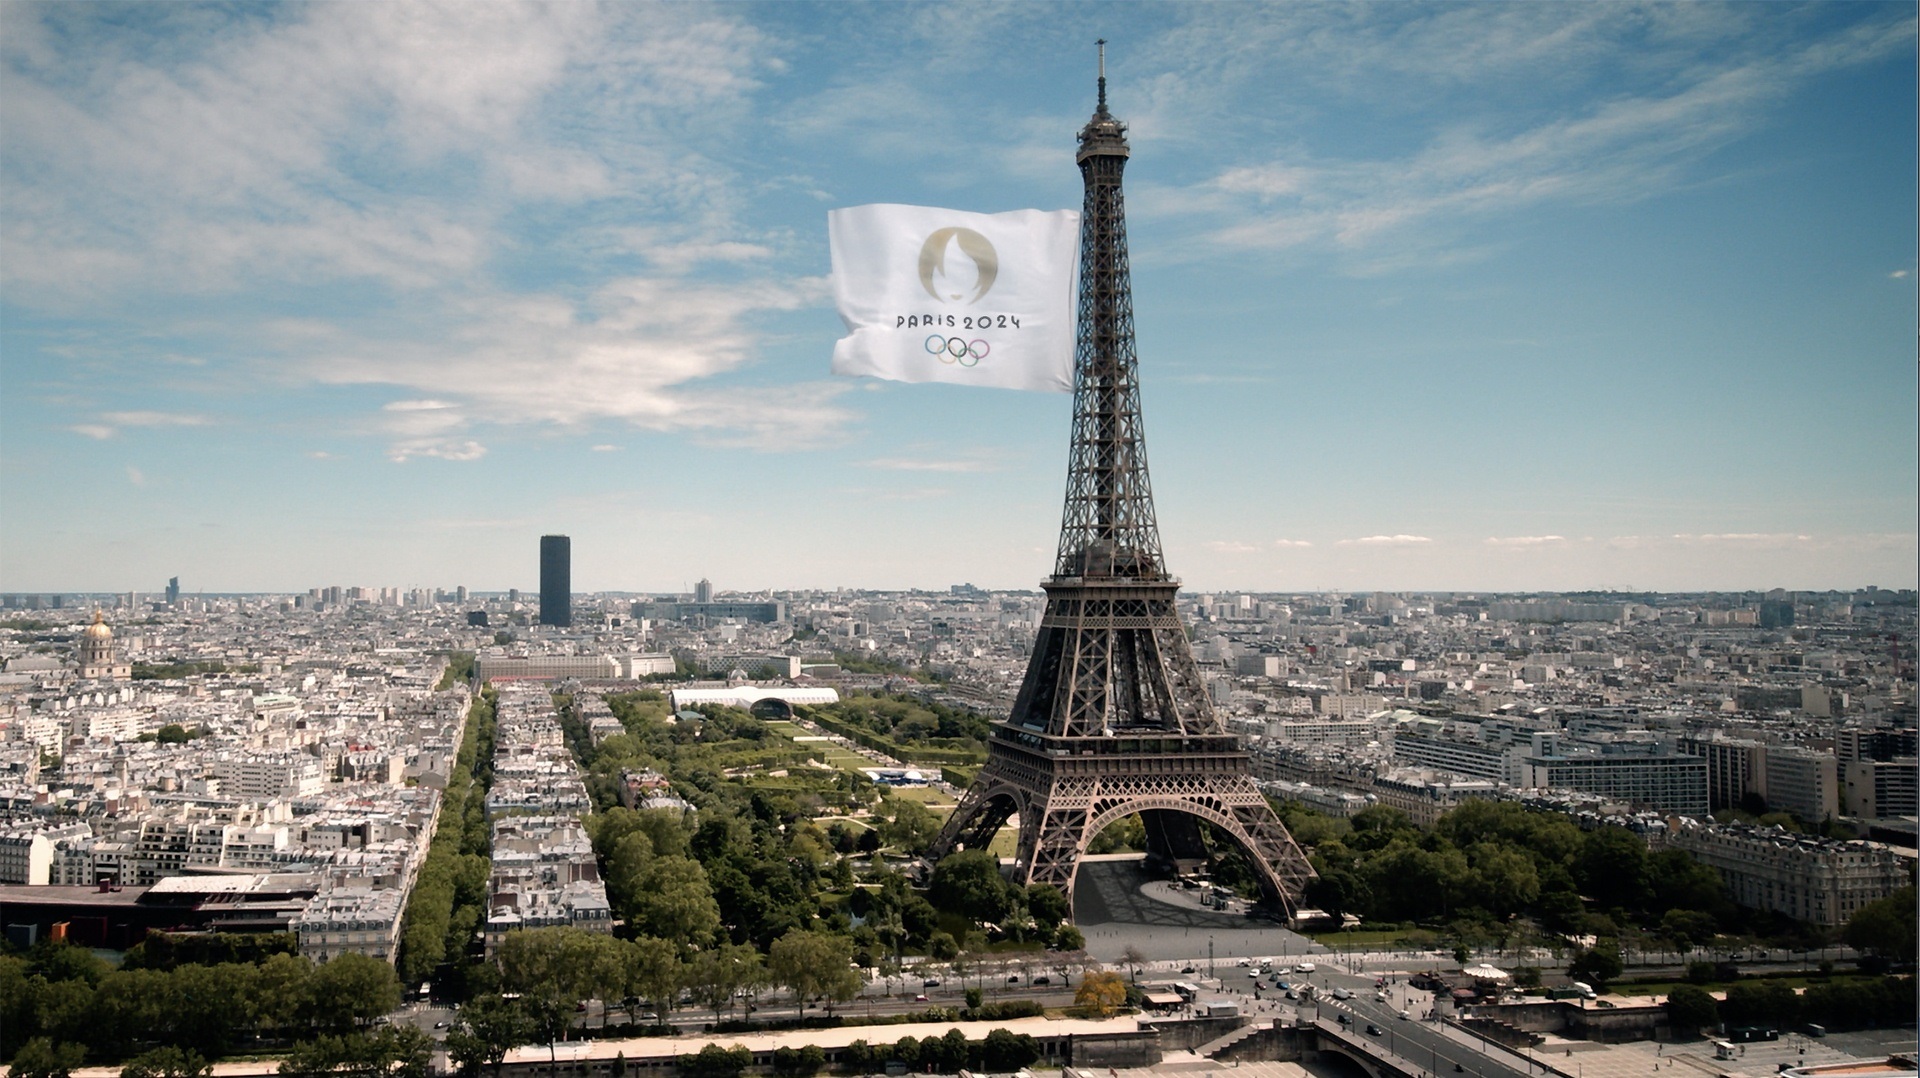 Google lança ferramenta de ”guia” para os jogos Olímpicos; conheça